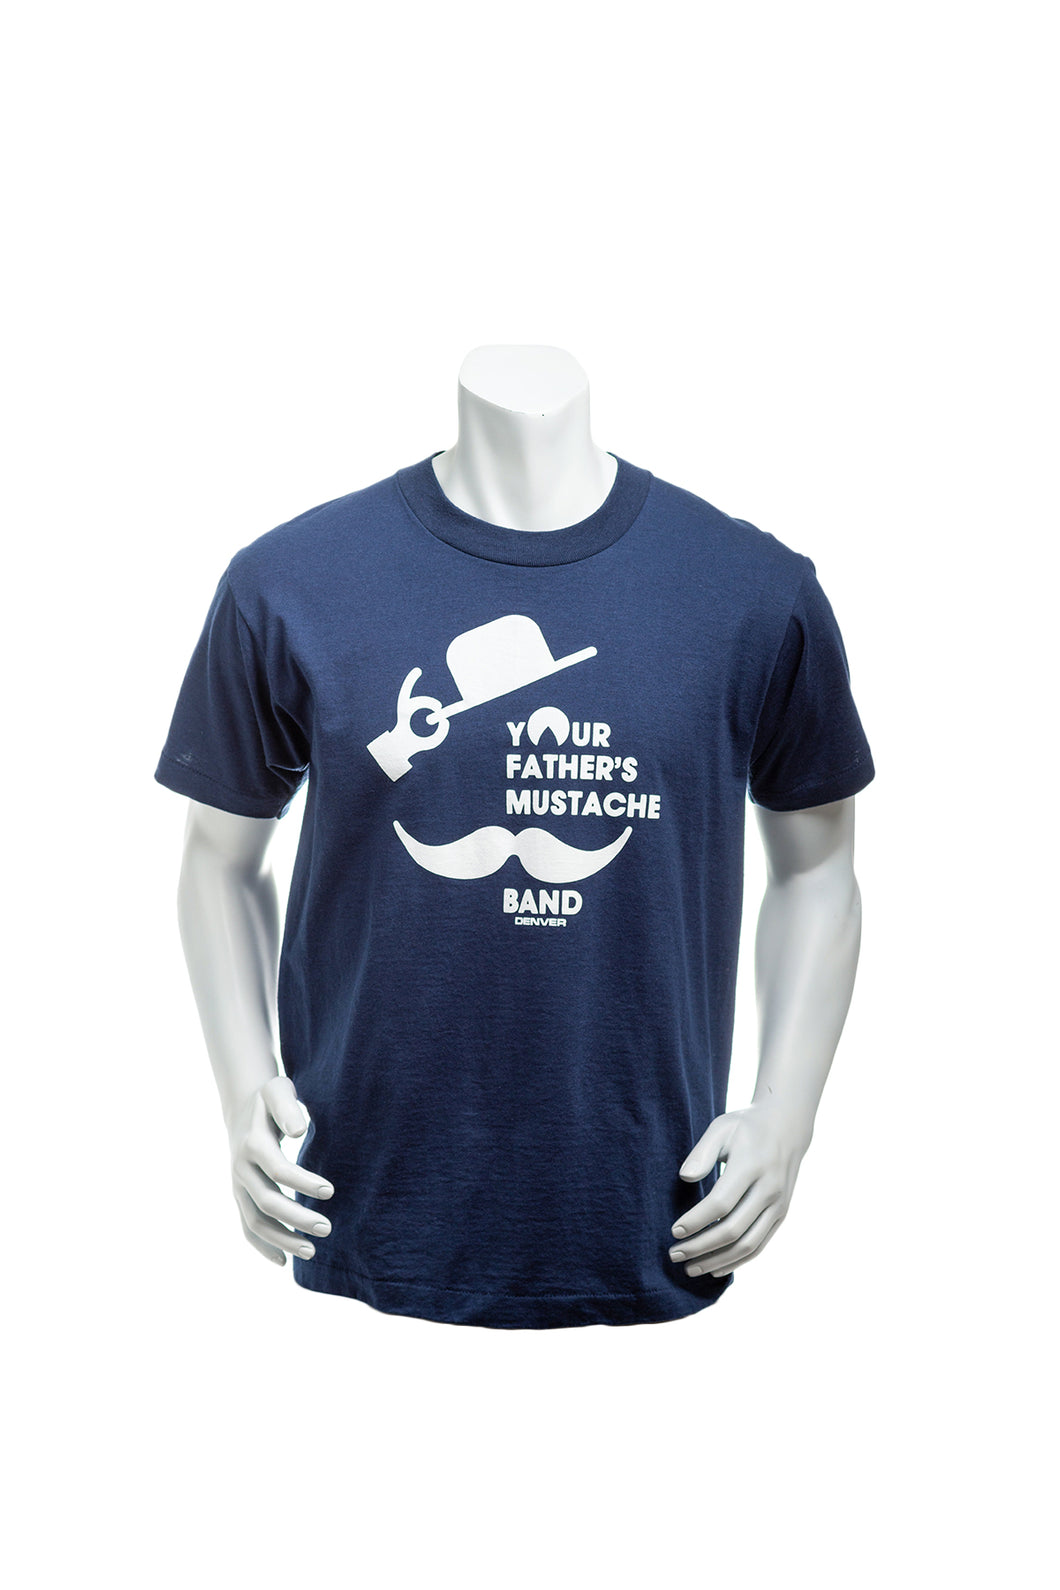 Vintage 90's Your Father's Mustache Band Denver, Colorado Single Stitch T-Shirt Men's Large